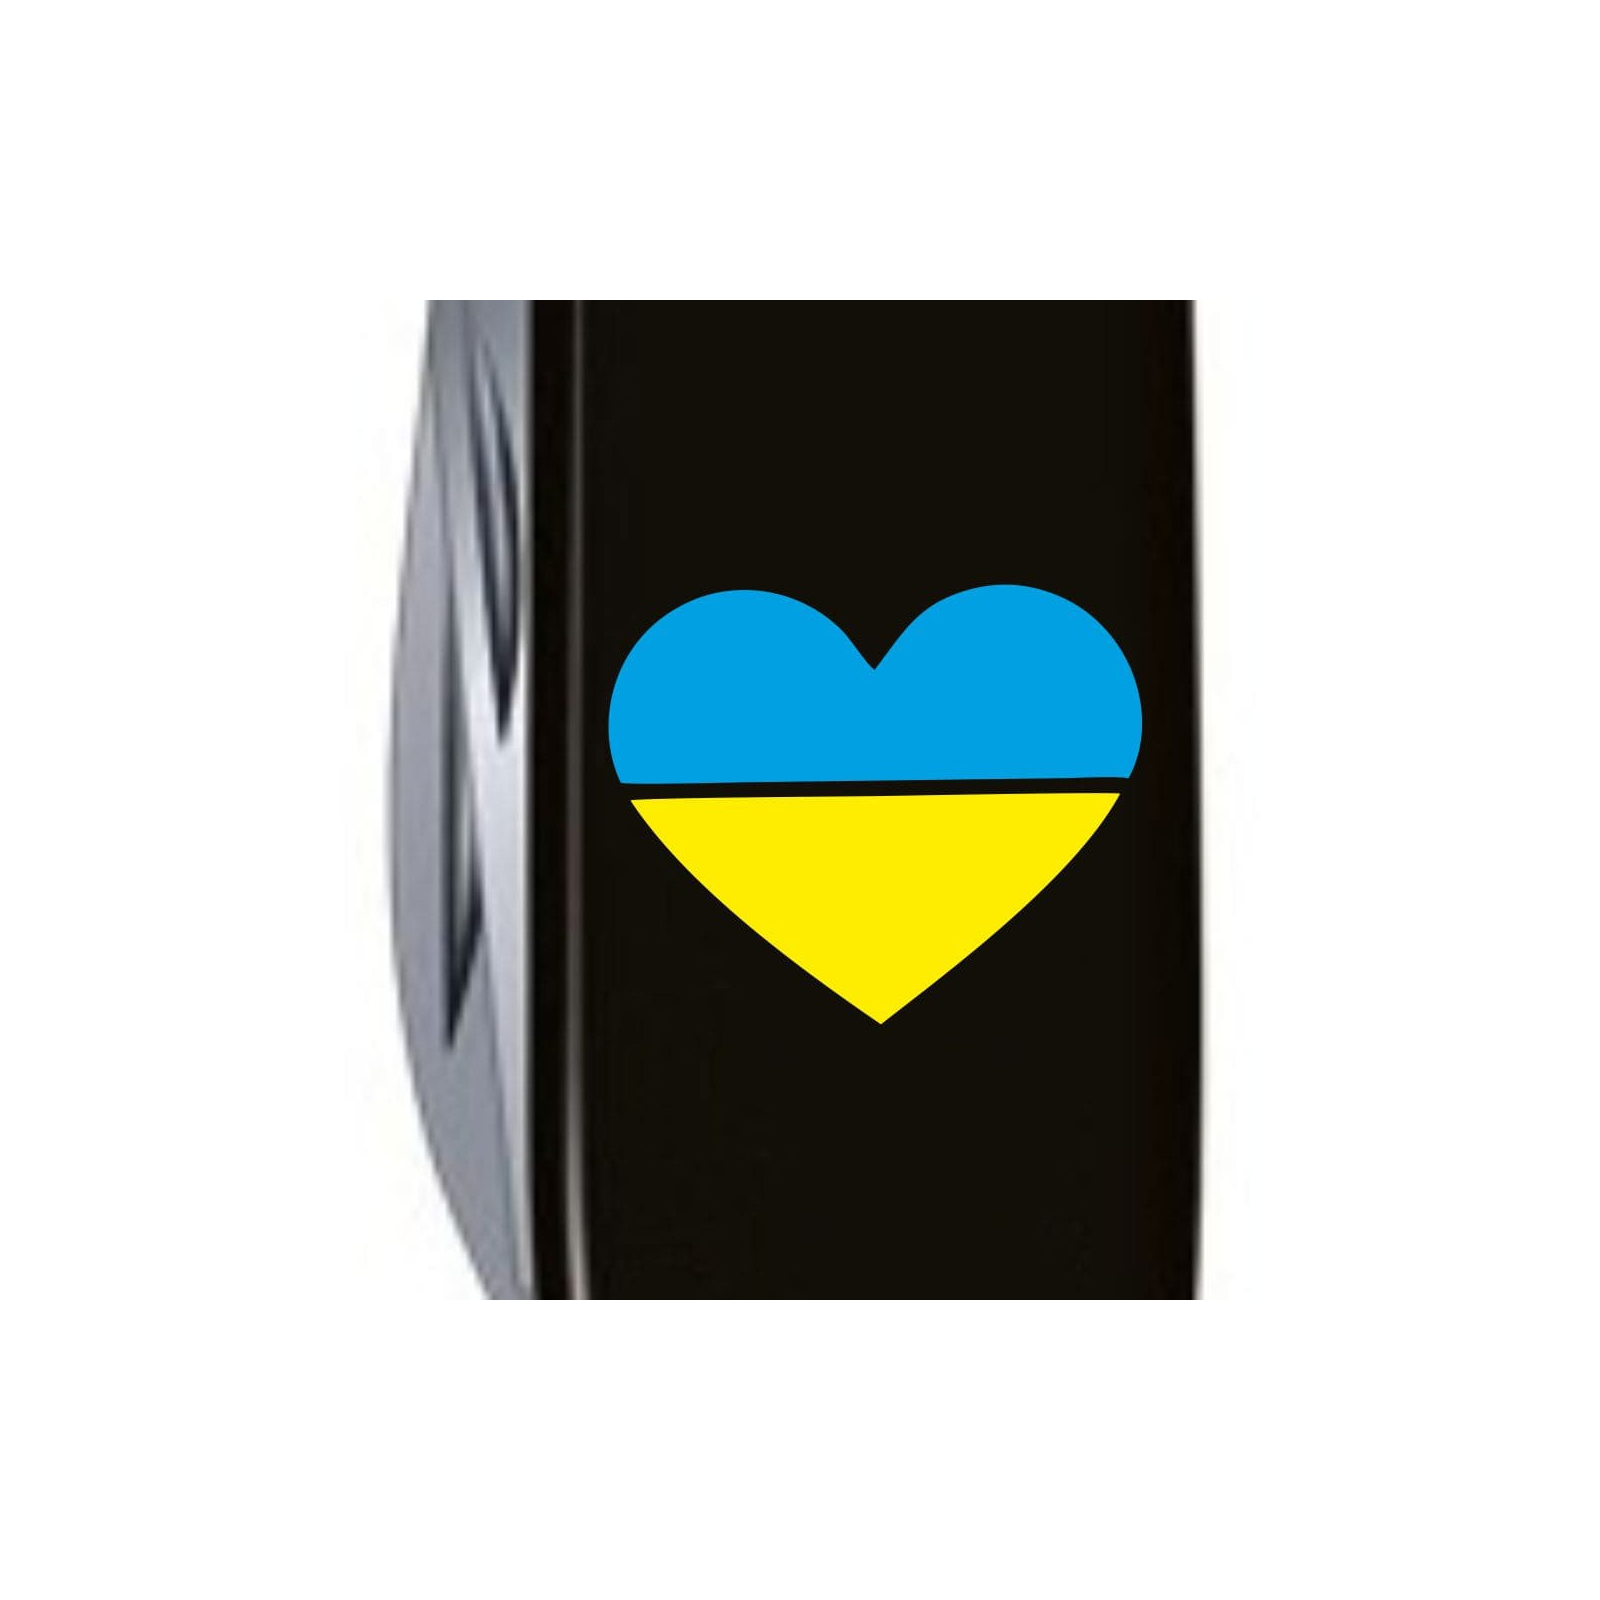 Нож Victorinox Climber Ukraine Black "Тризуб Жовто-Блакитний" (1.3703.3_T0016u) изображение 3